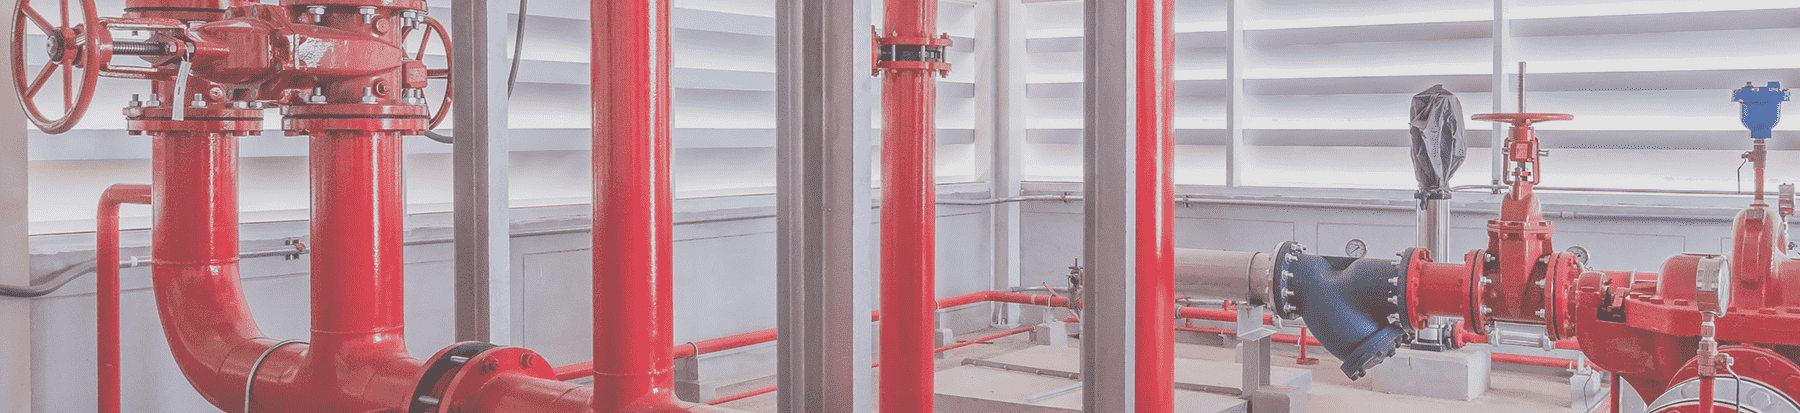 Проектирование систем внутреннего пожарного  водопровода